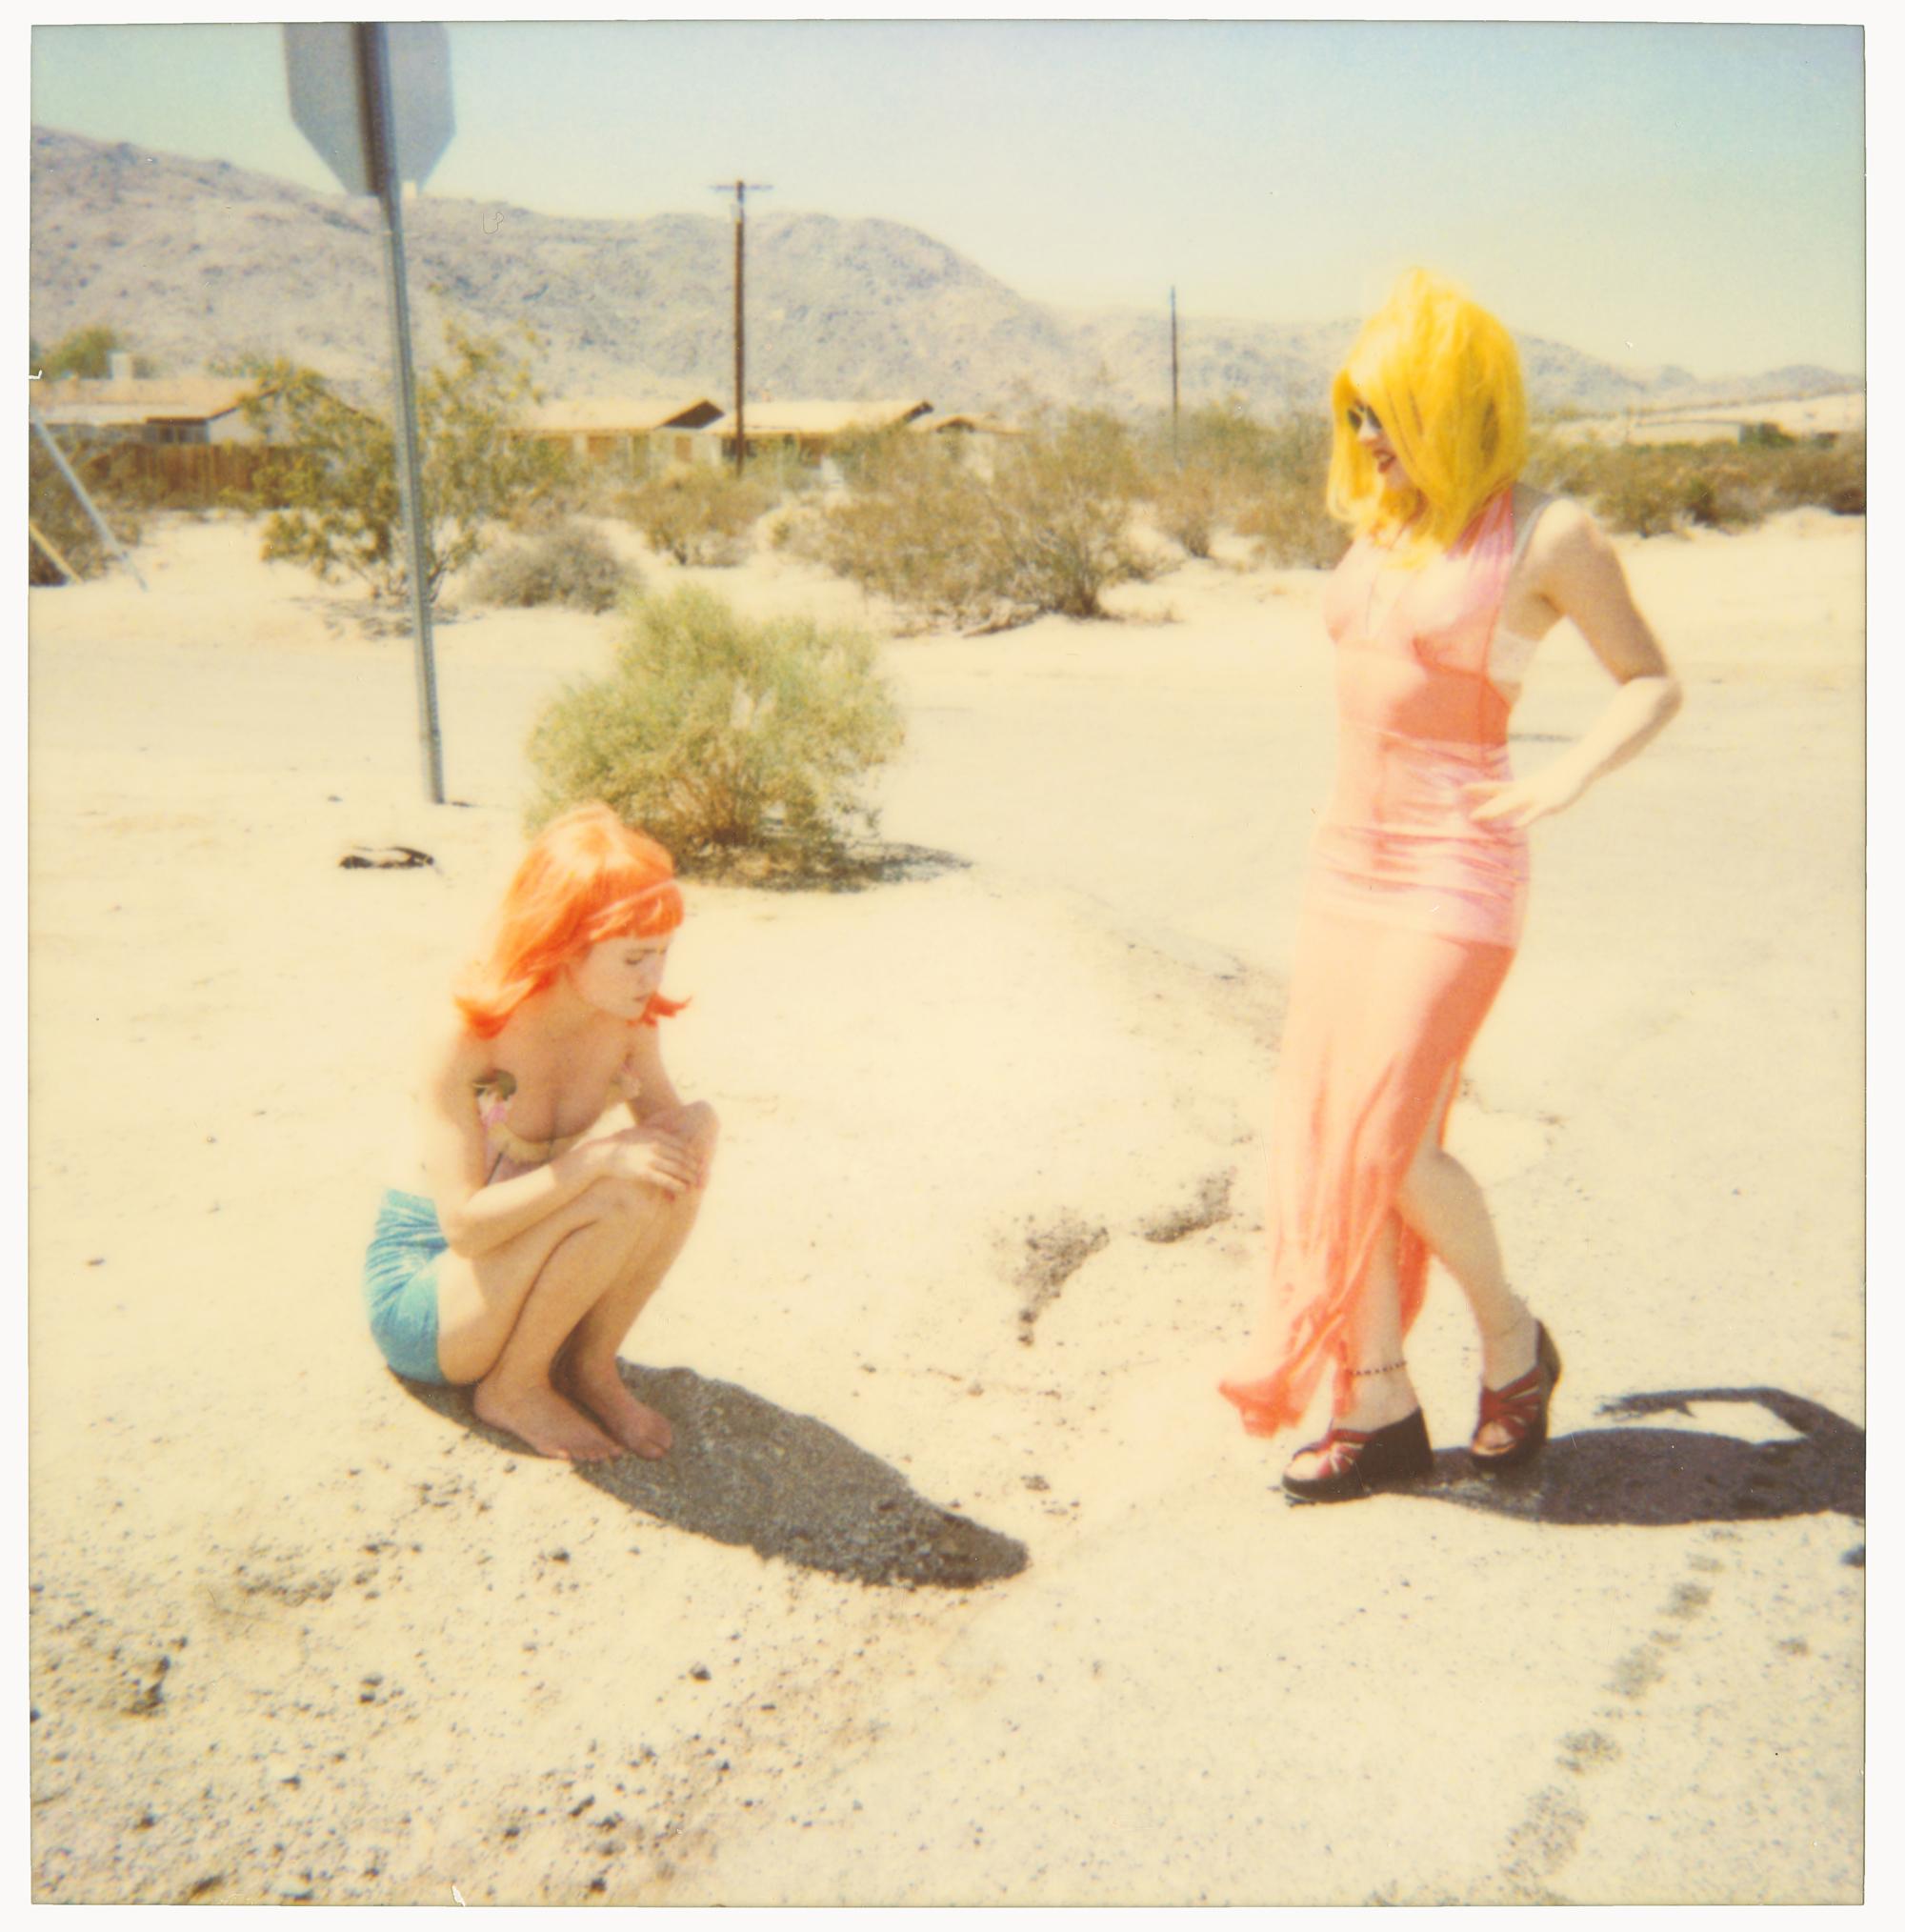 Radha und Max an Dirt Road (29 Palms, CA) – analog, Polaroid, zeitgenössisch – Photograph von Stefanie Schneider